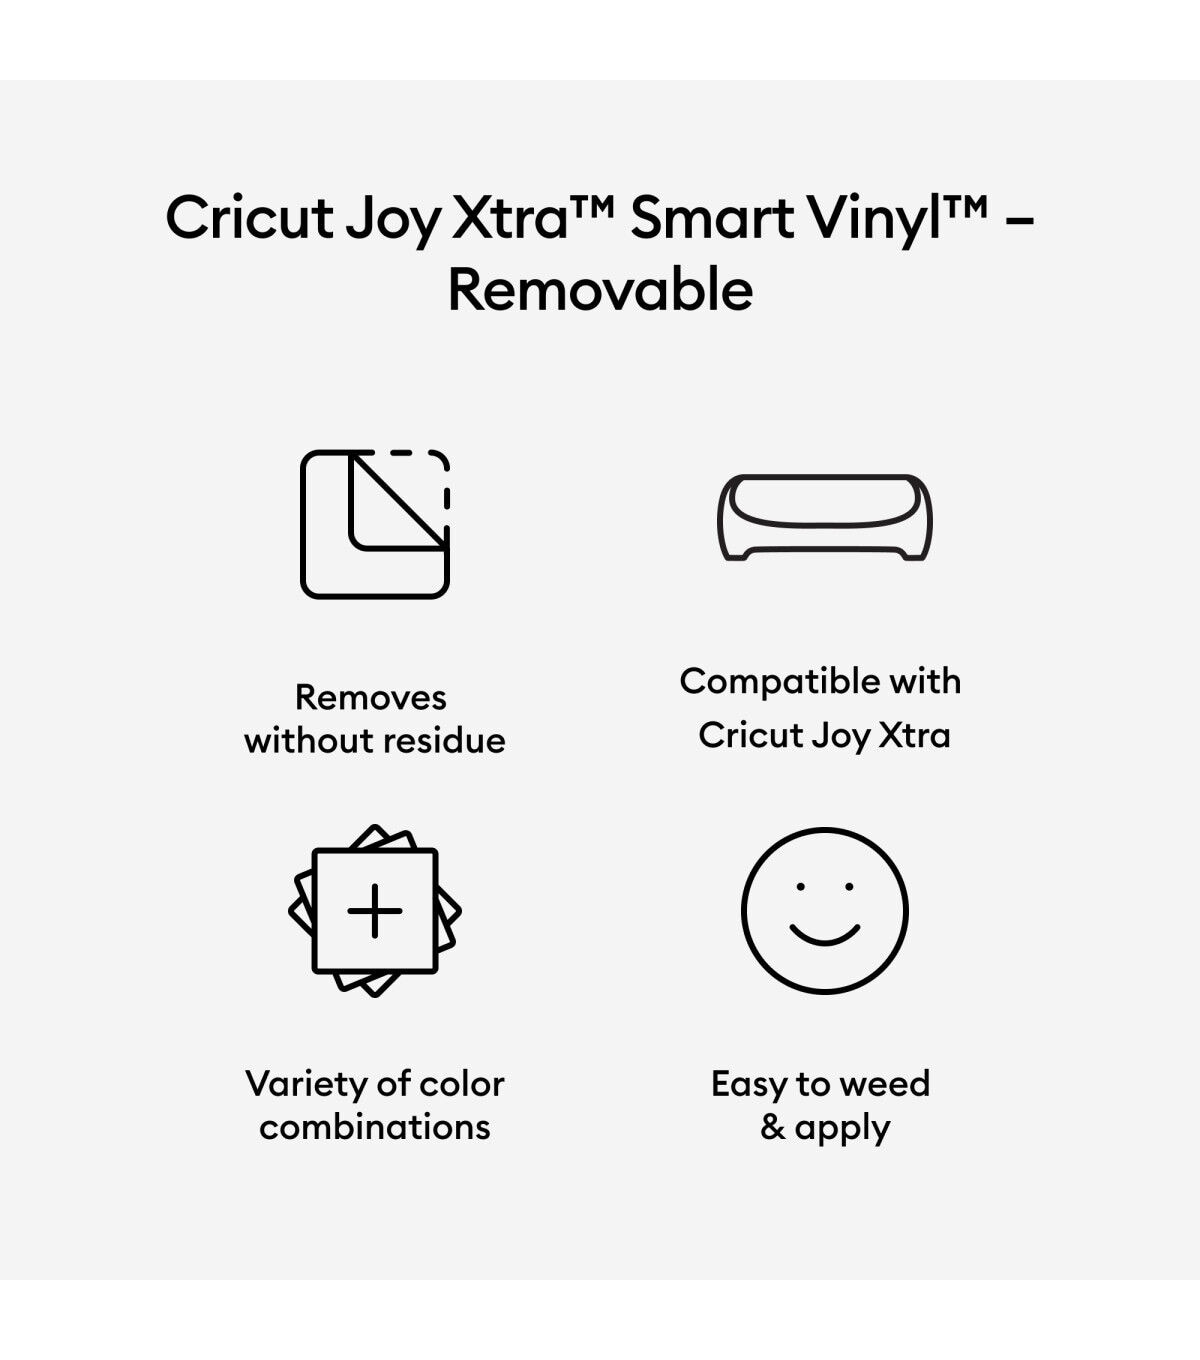 Cricut Joy Xtra Removable Smart Vinyl- Black